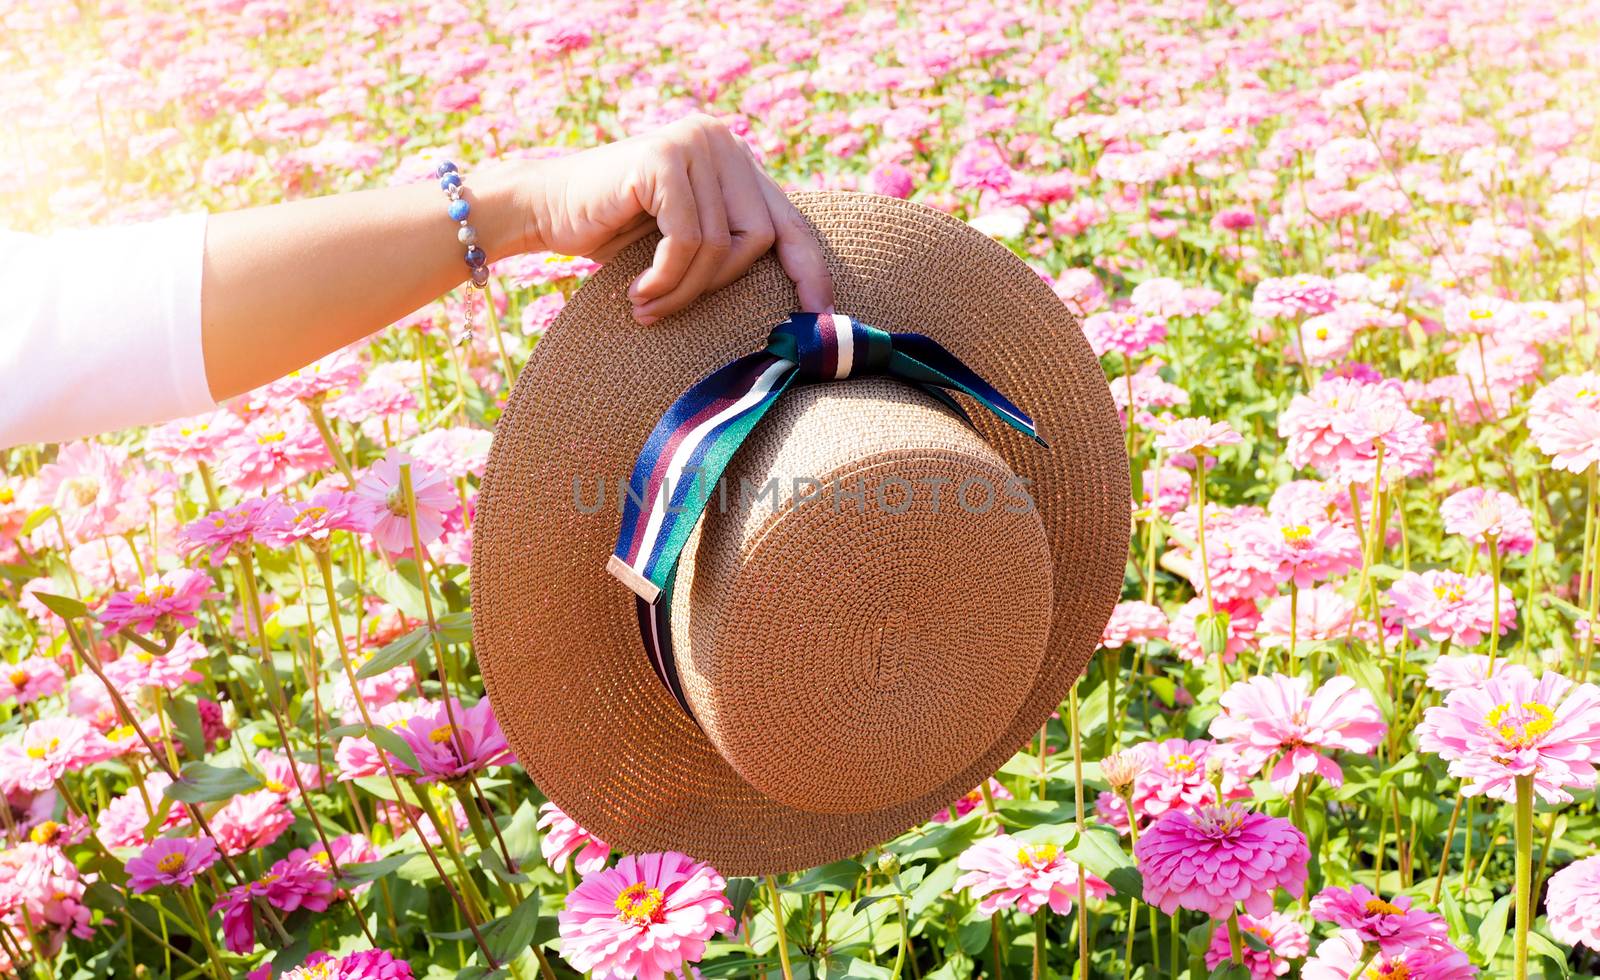 hand with straw hat vintage fashion style in Zinnia flower field garden.